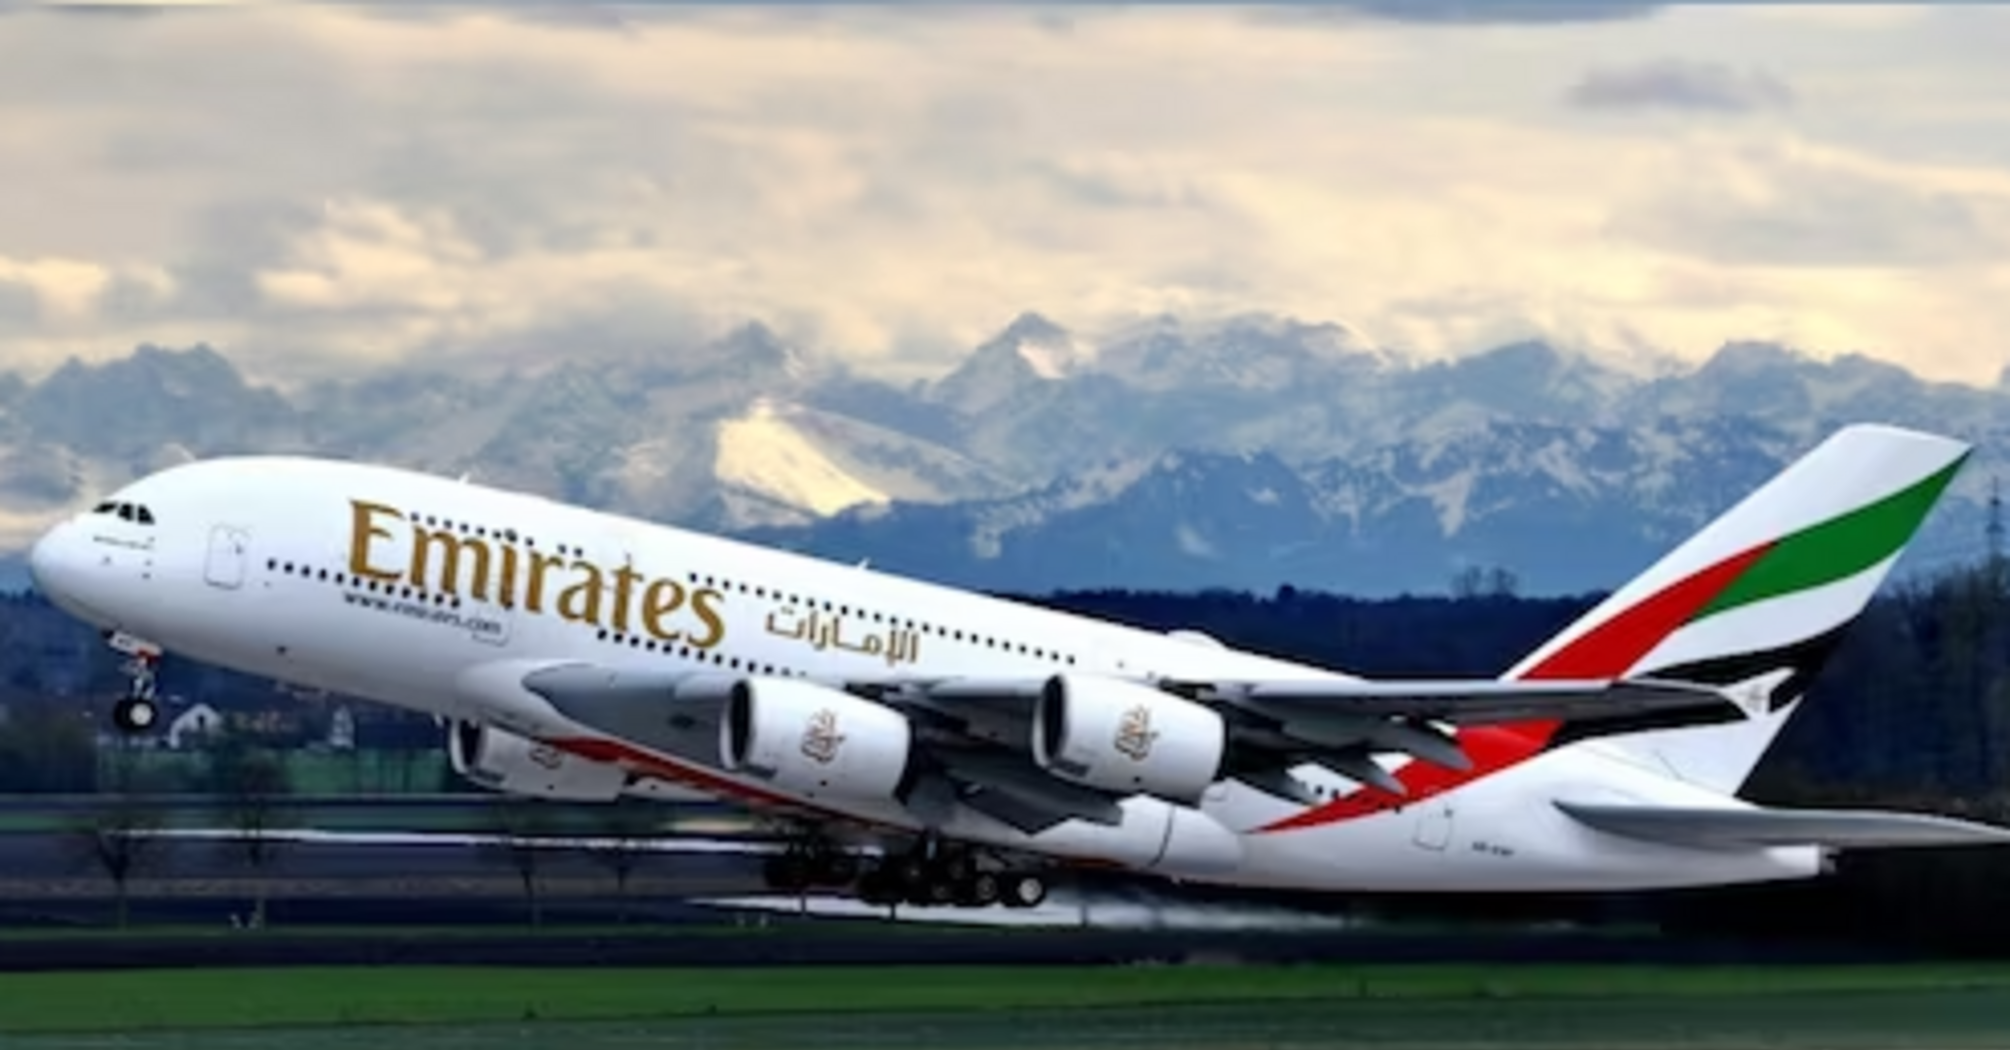 The Emirates plane